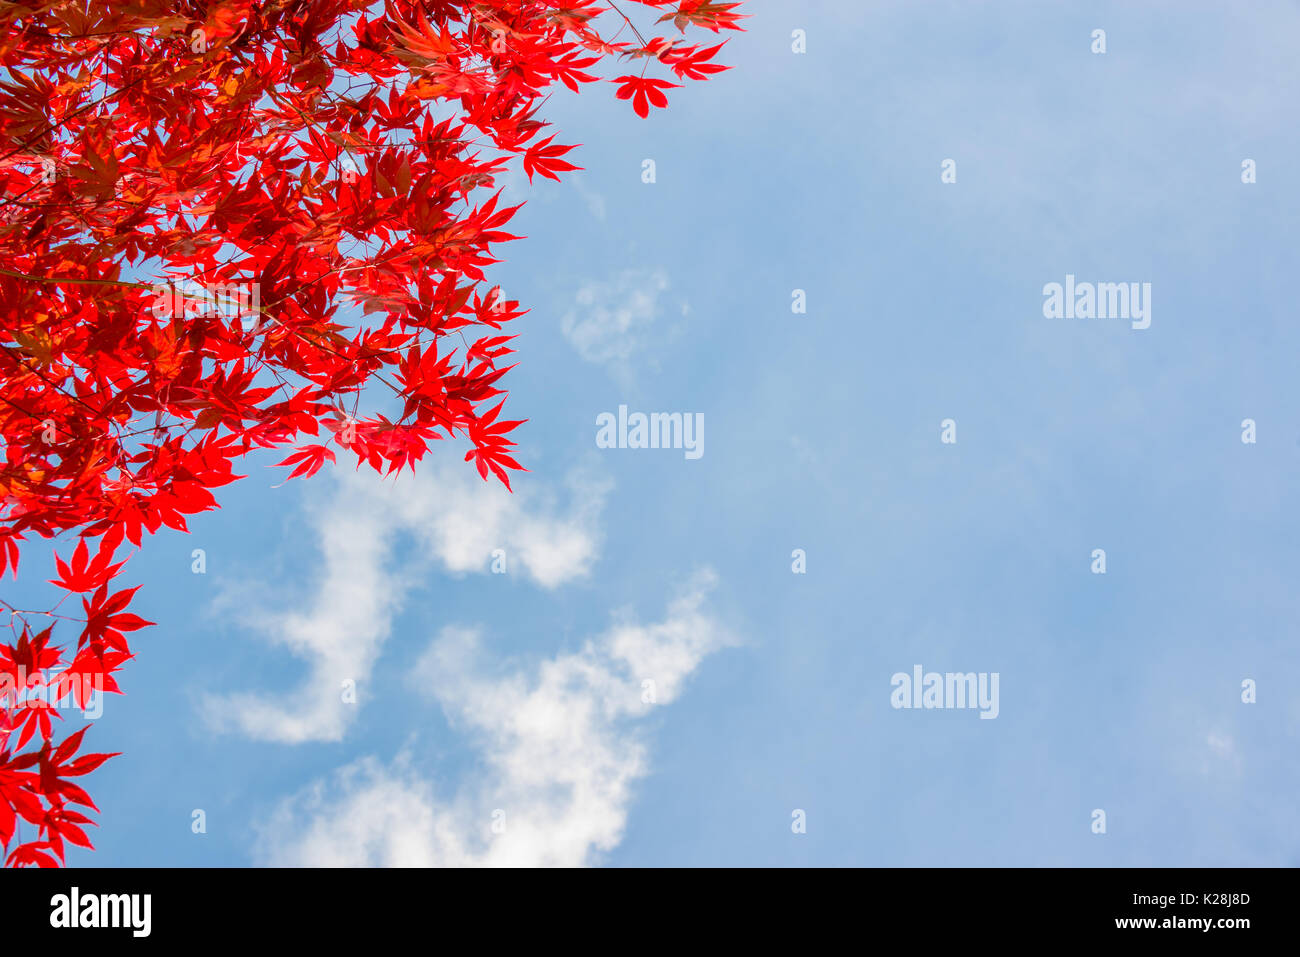 Feuilles d'érable d'automne coloré rouge, blue sky background with copy space - concept d'automne Banque D'Images